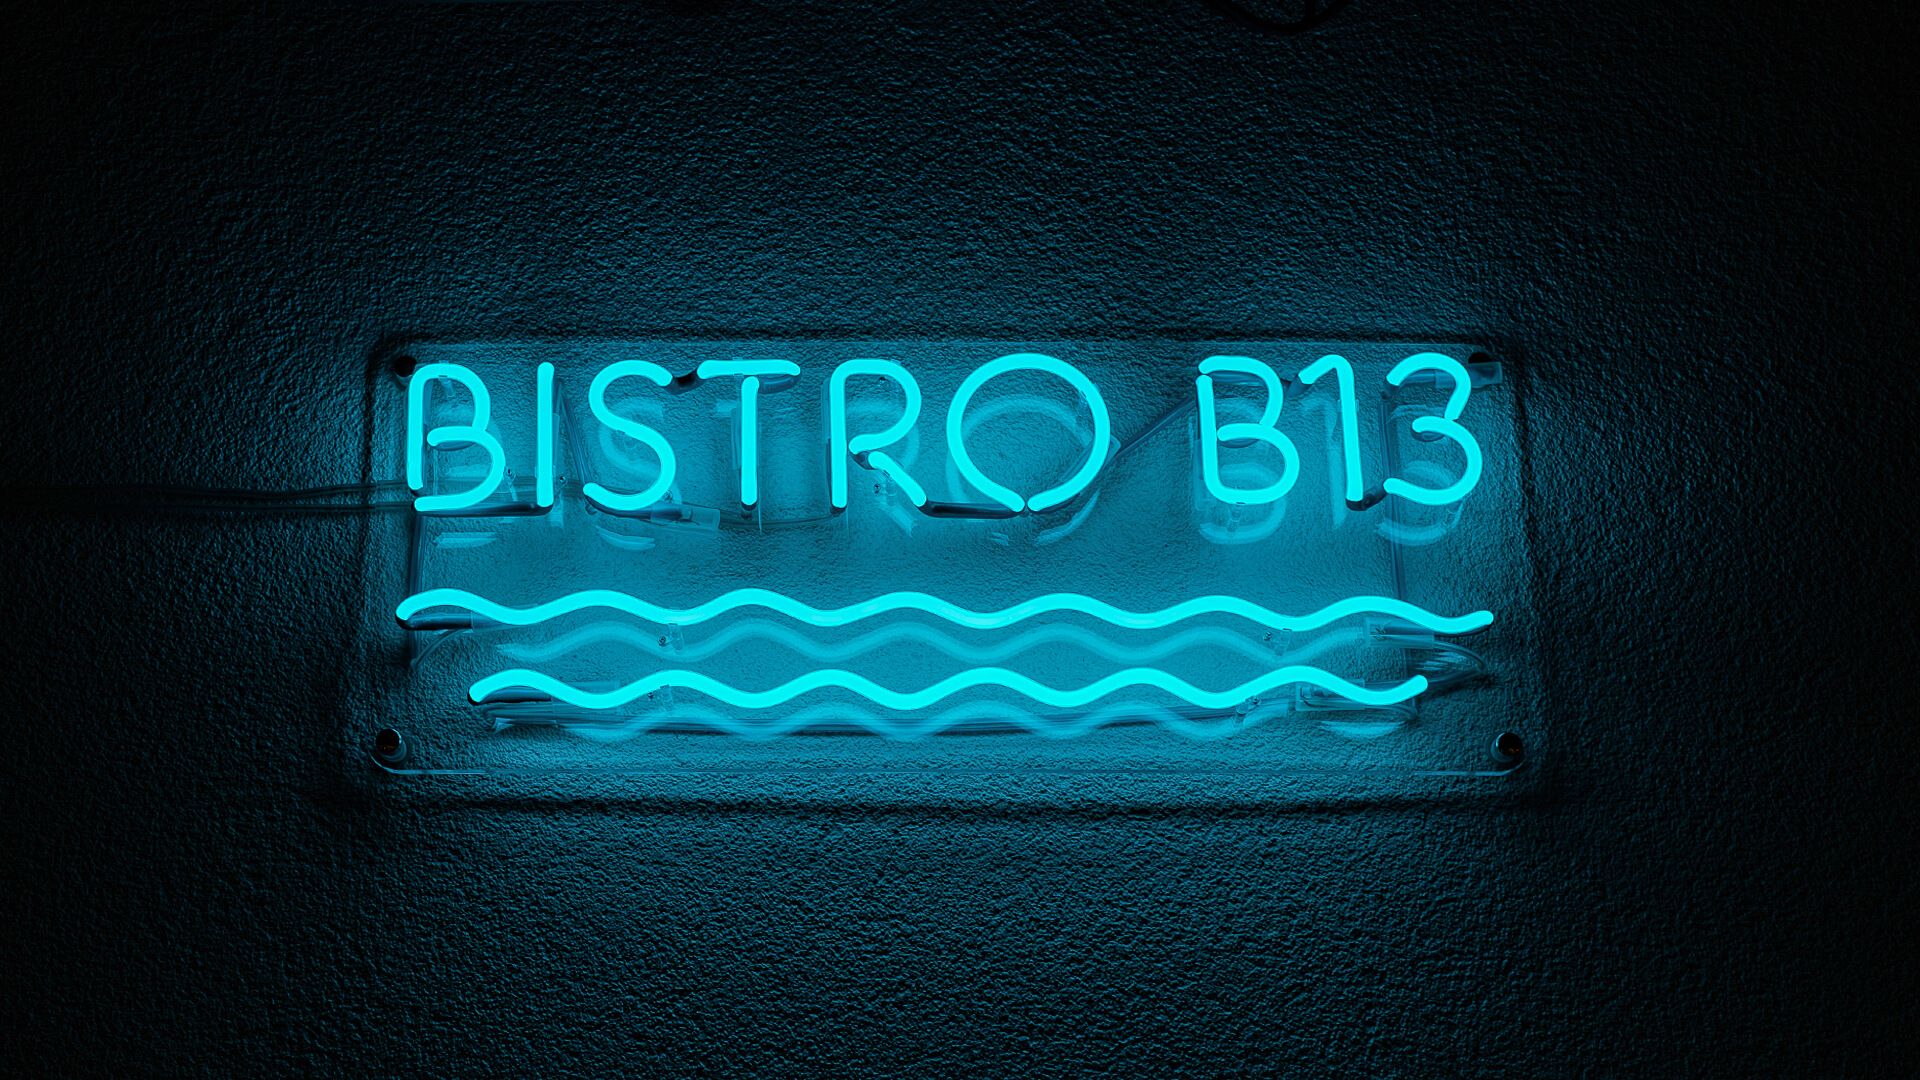 Bistro B13 - Niebieski neon Bistro, z falami pod napisem.